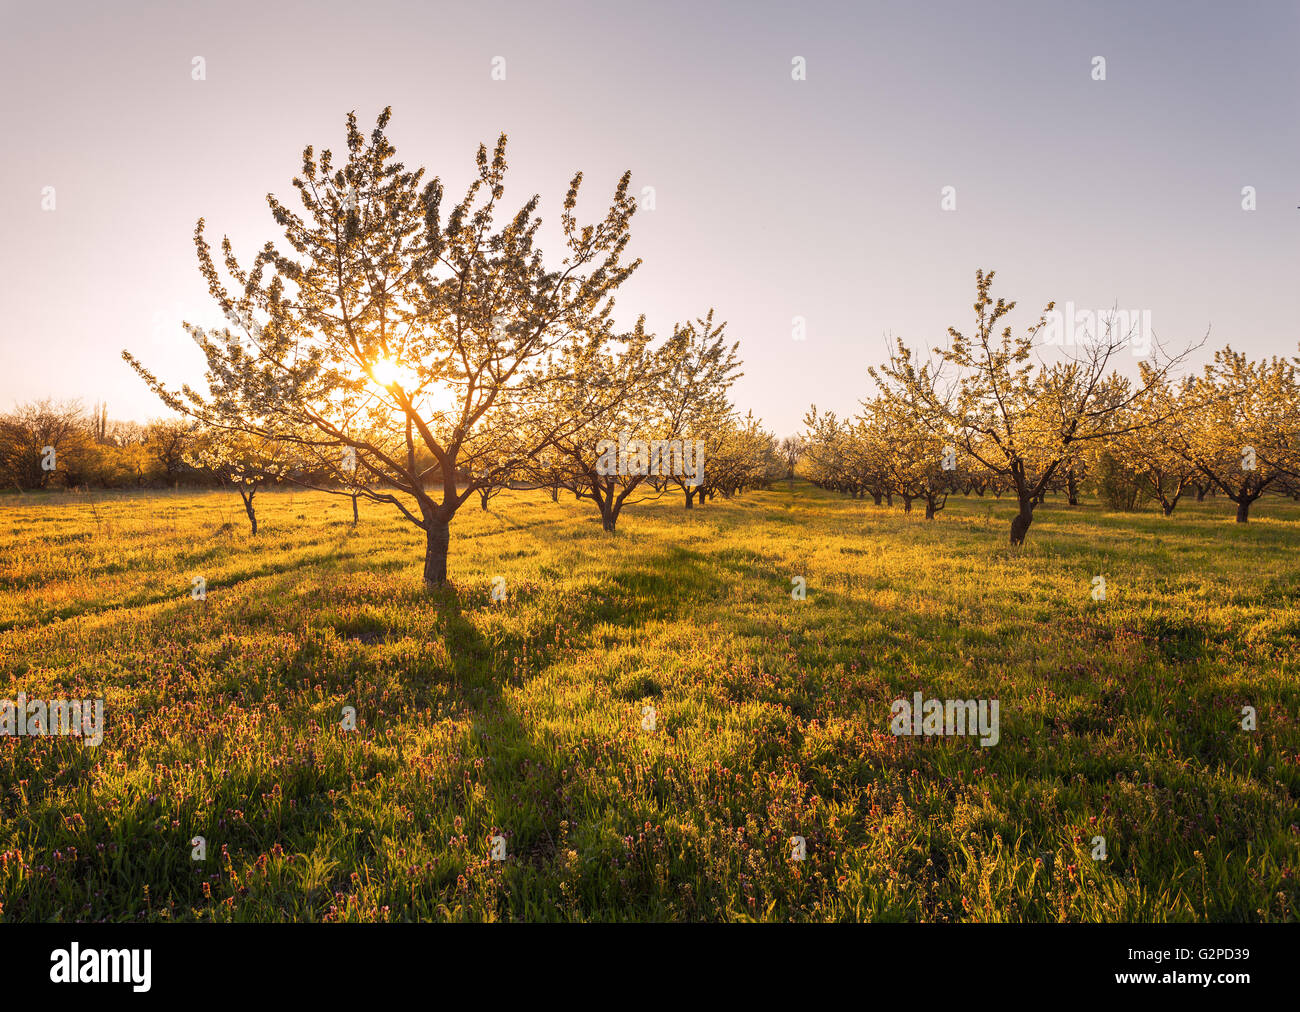 Lonely fioritura degli alberi da frutto in giardino al tramonto in primavera. Foto Stock